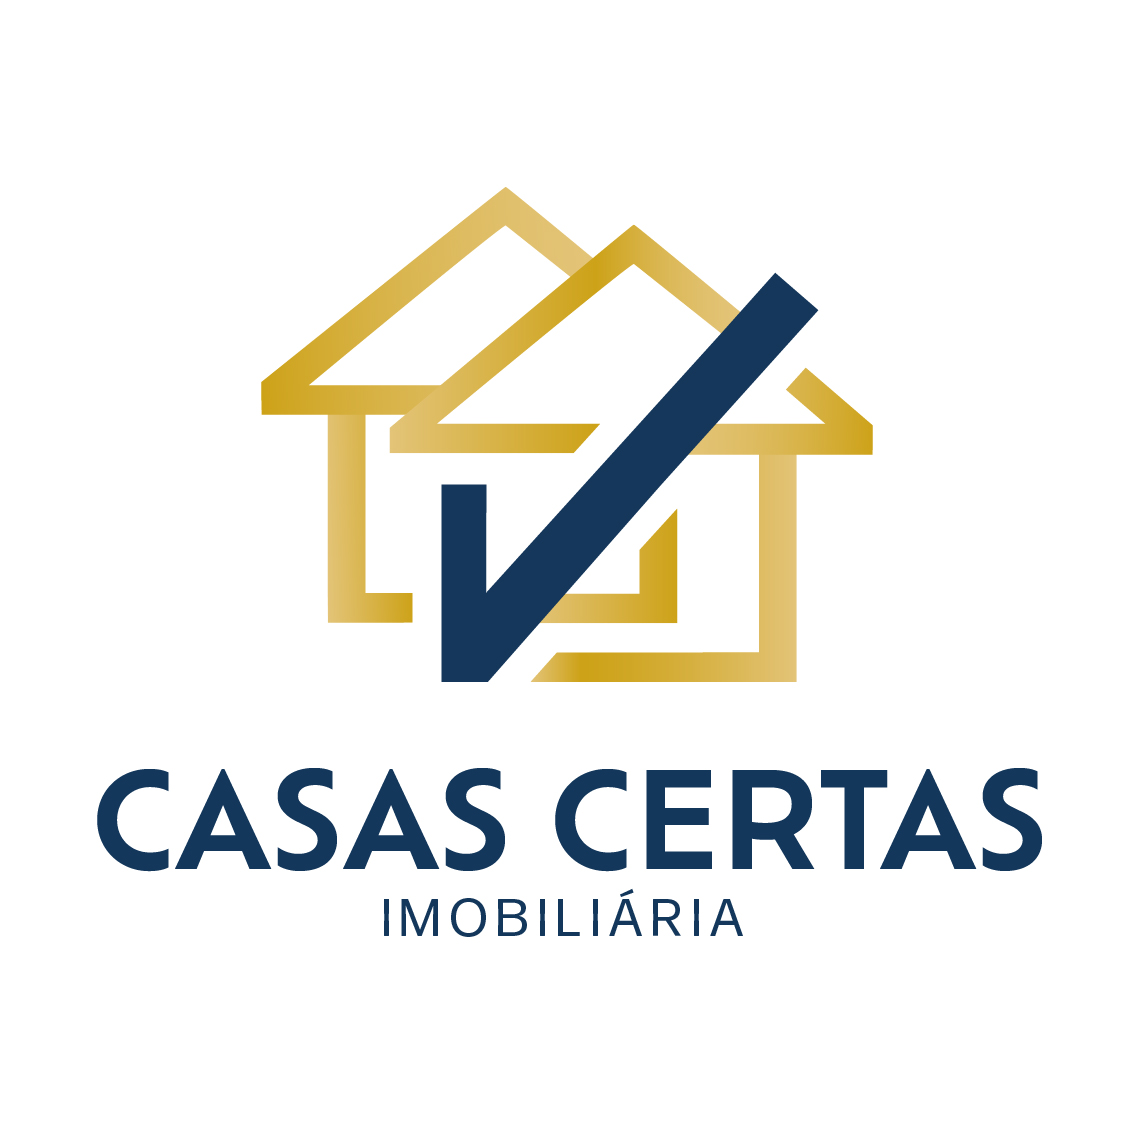 CASAS CERTAS imobiliária - Guia Imobiliário